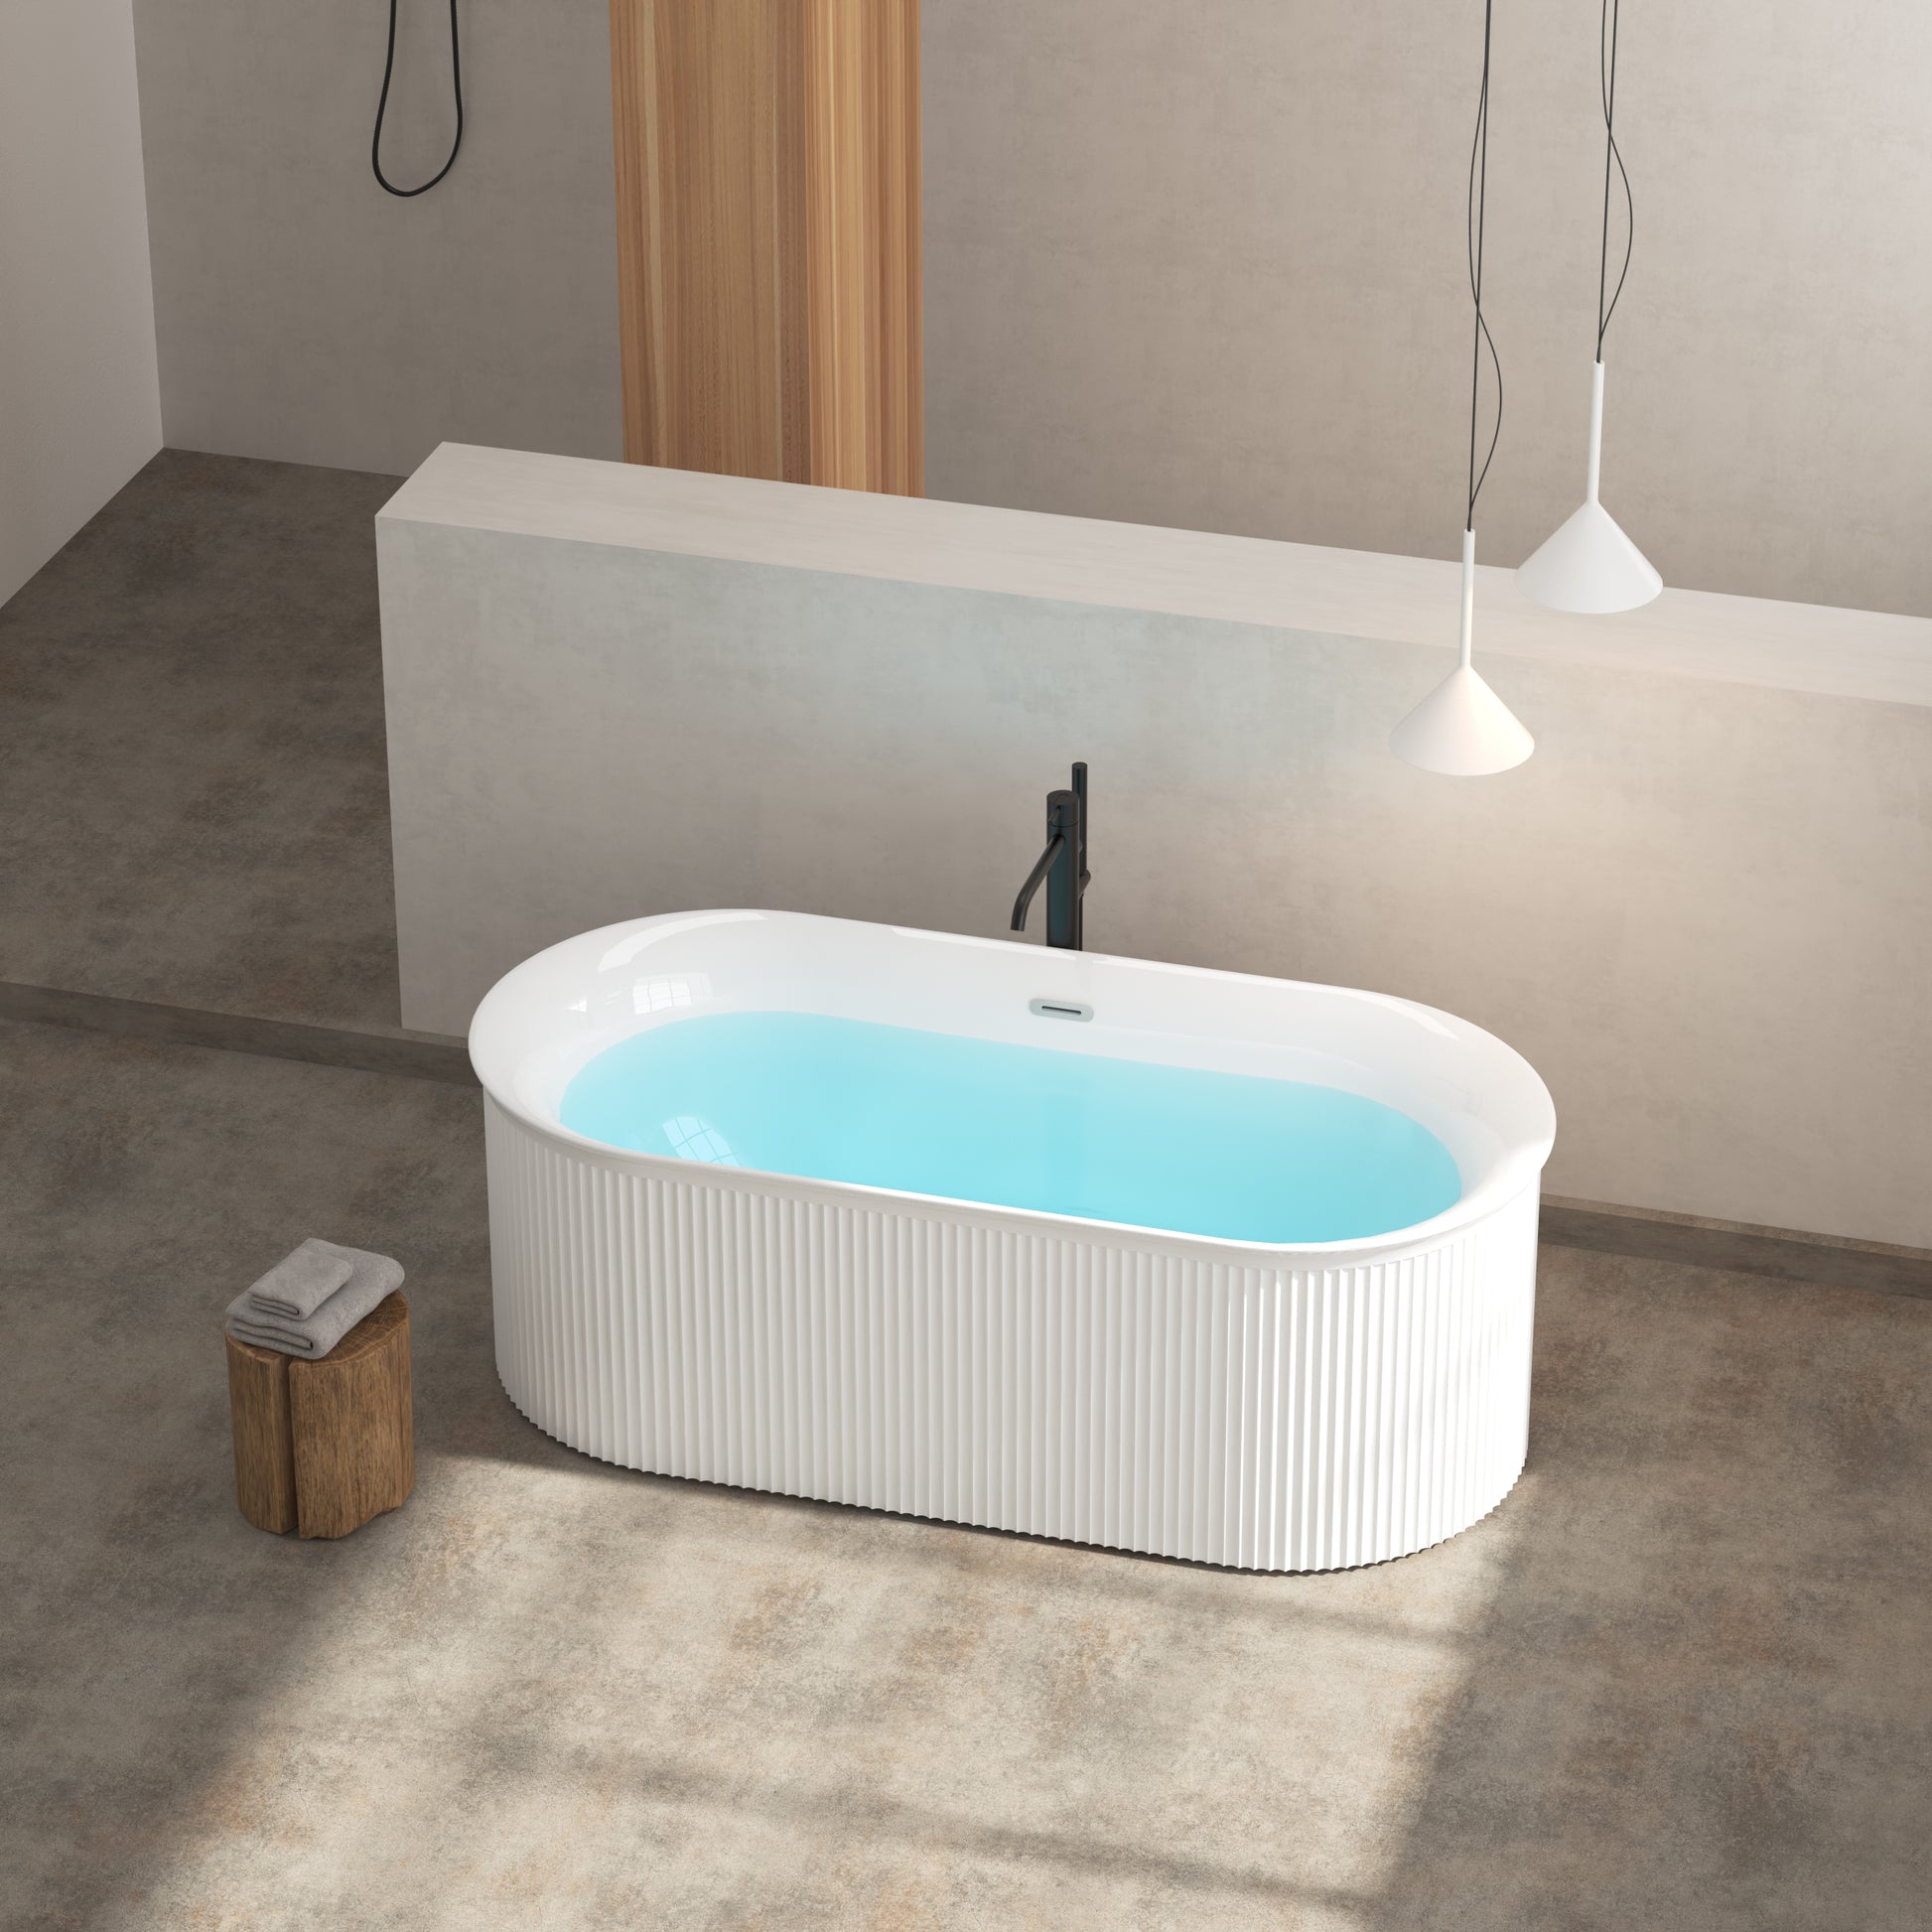 67" Acrylic Freestanding Bathtub Acrylic Soaking